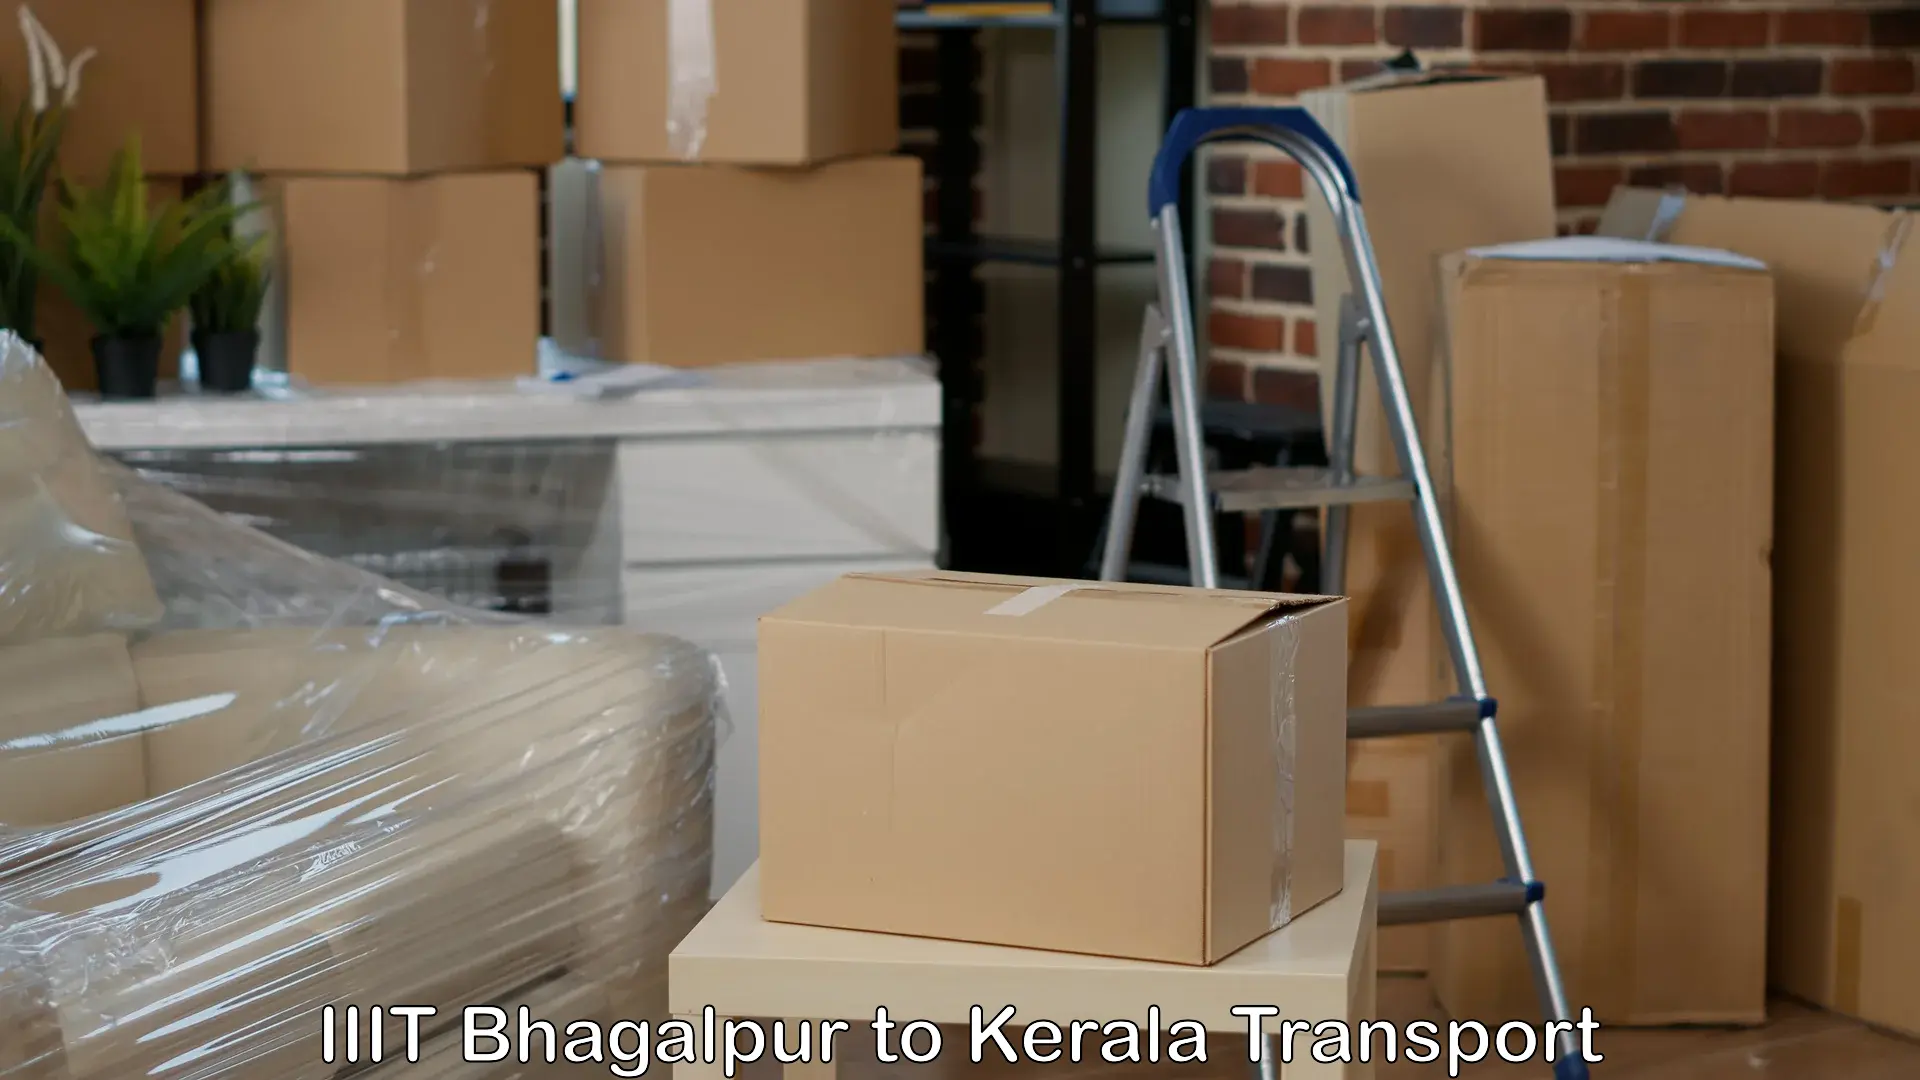 Furniture transport service IIIT Bhagalpur to Karunagappally